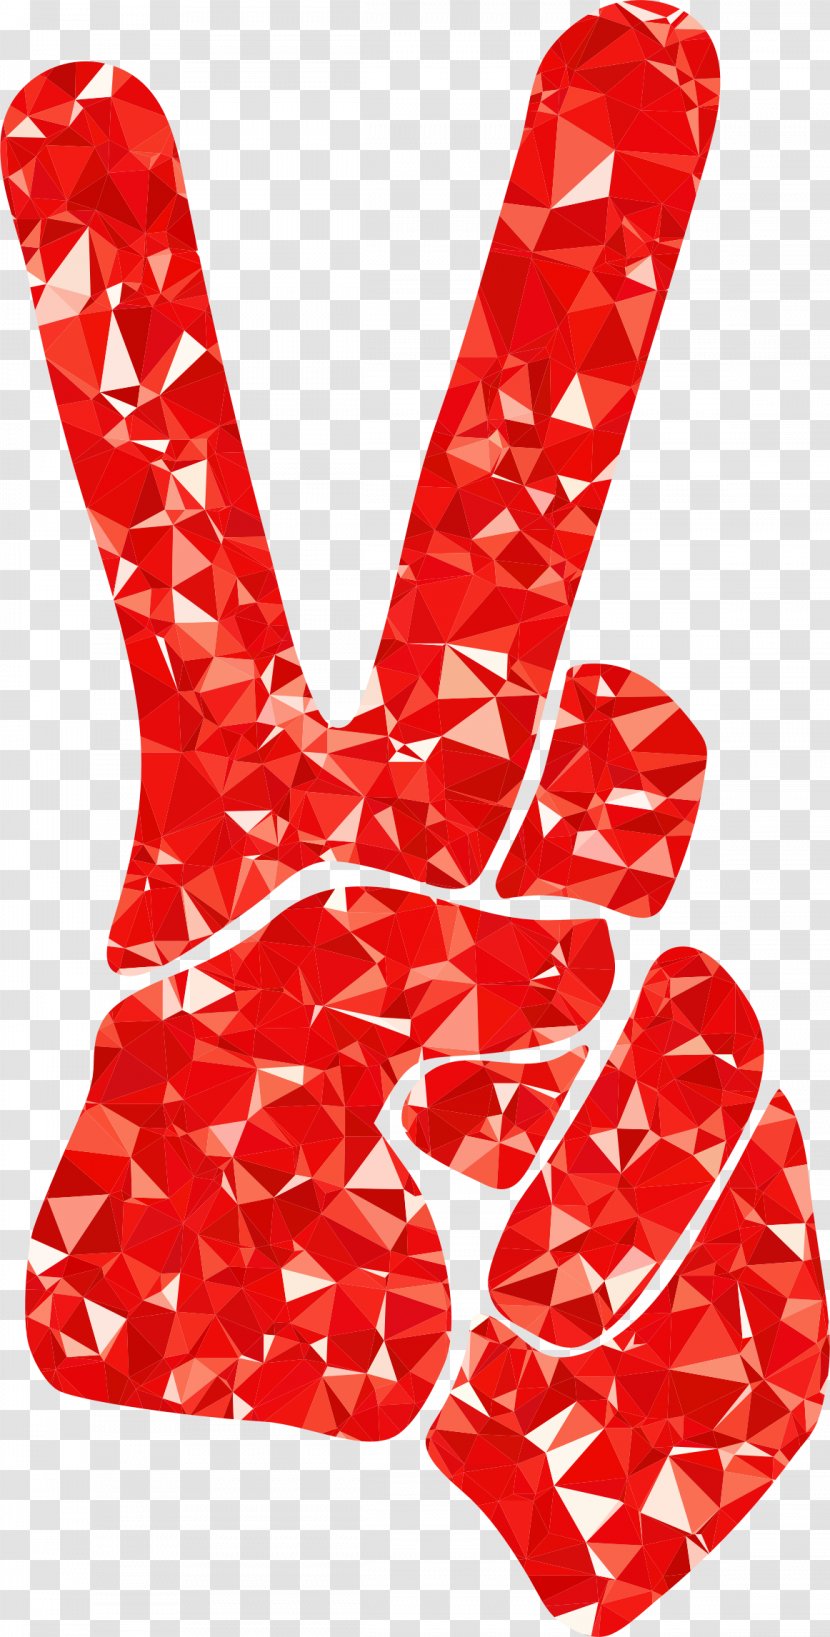 V Sign Peace Symbols Clip Art - Ruby Transparent PNG